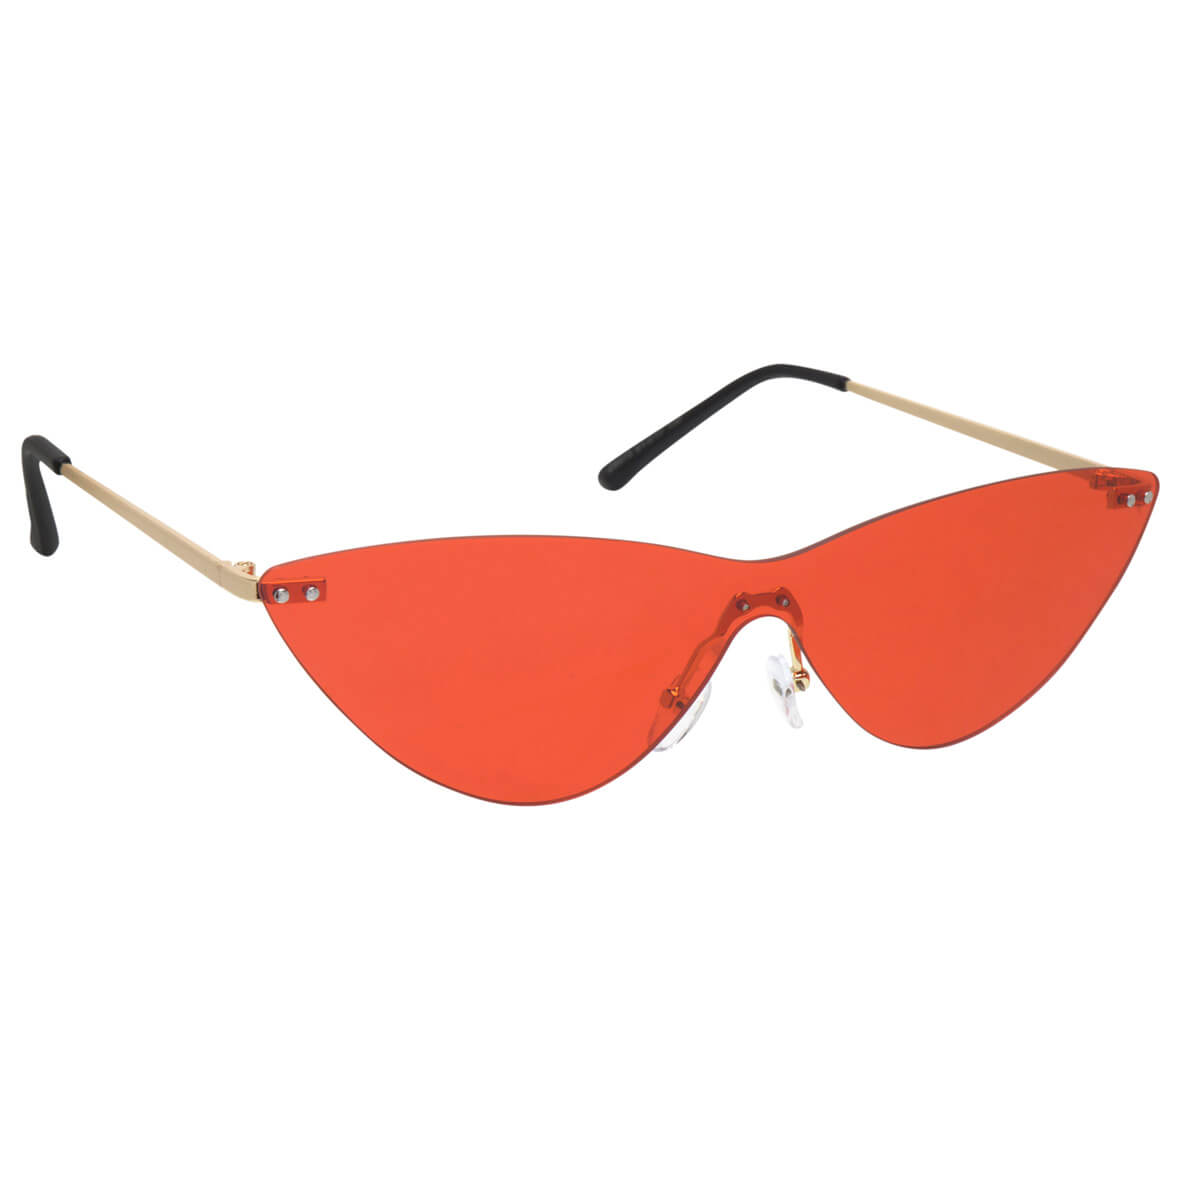 Catlike single lens sunglasses